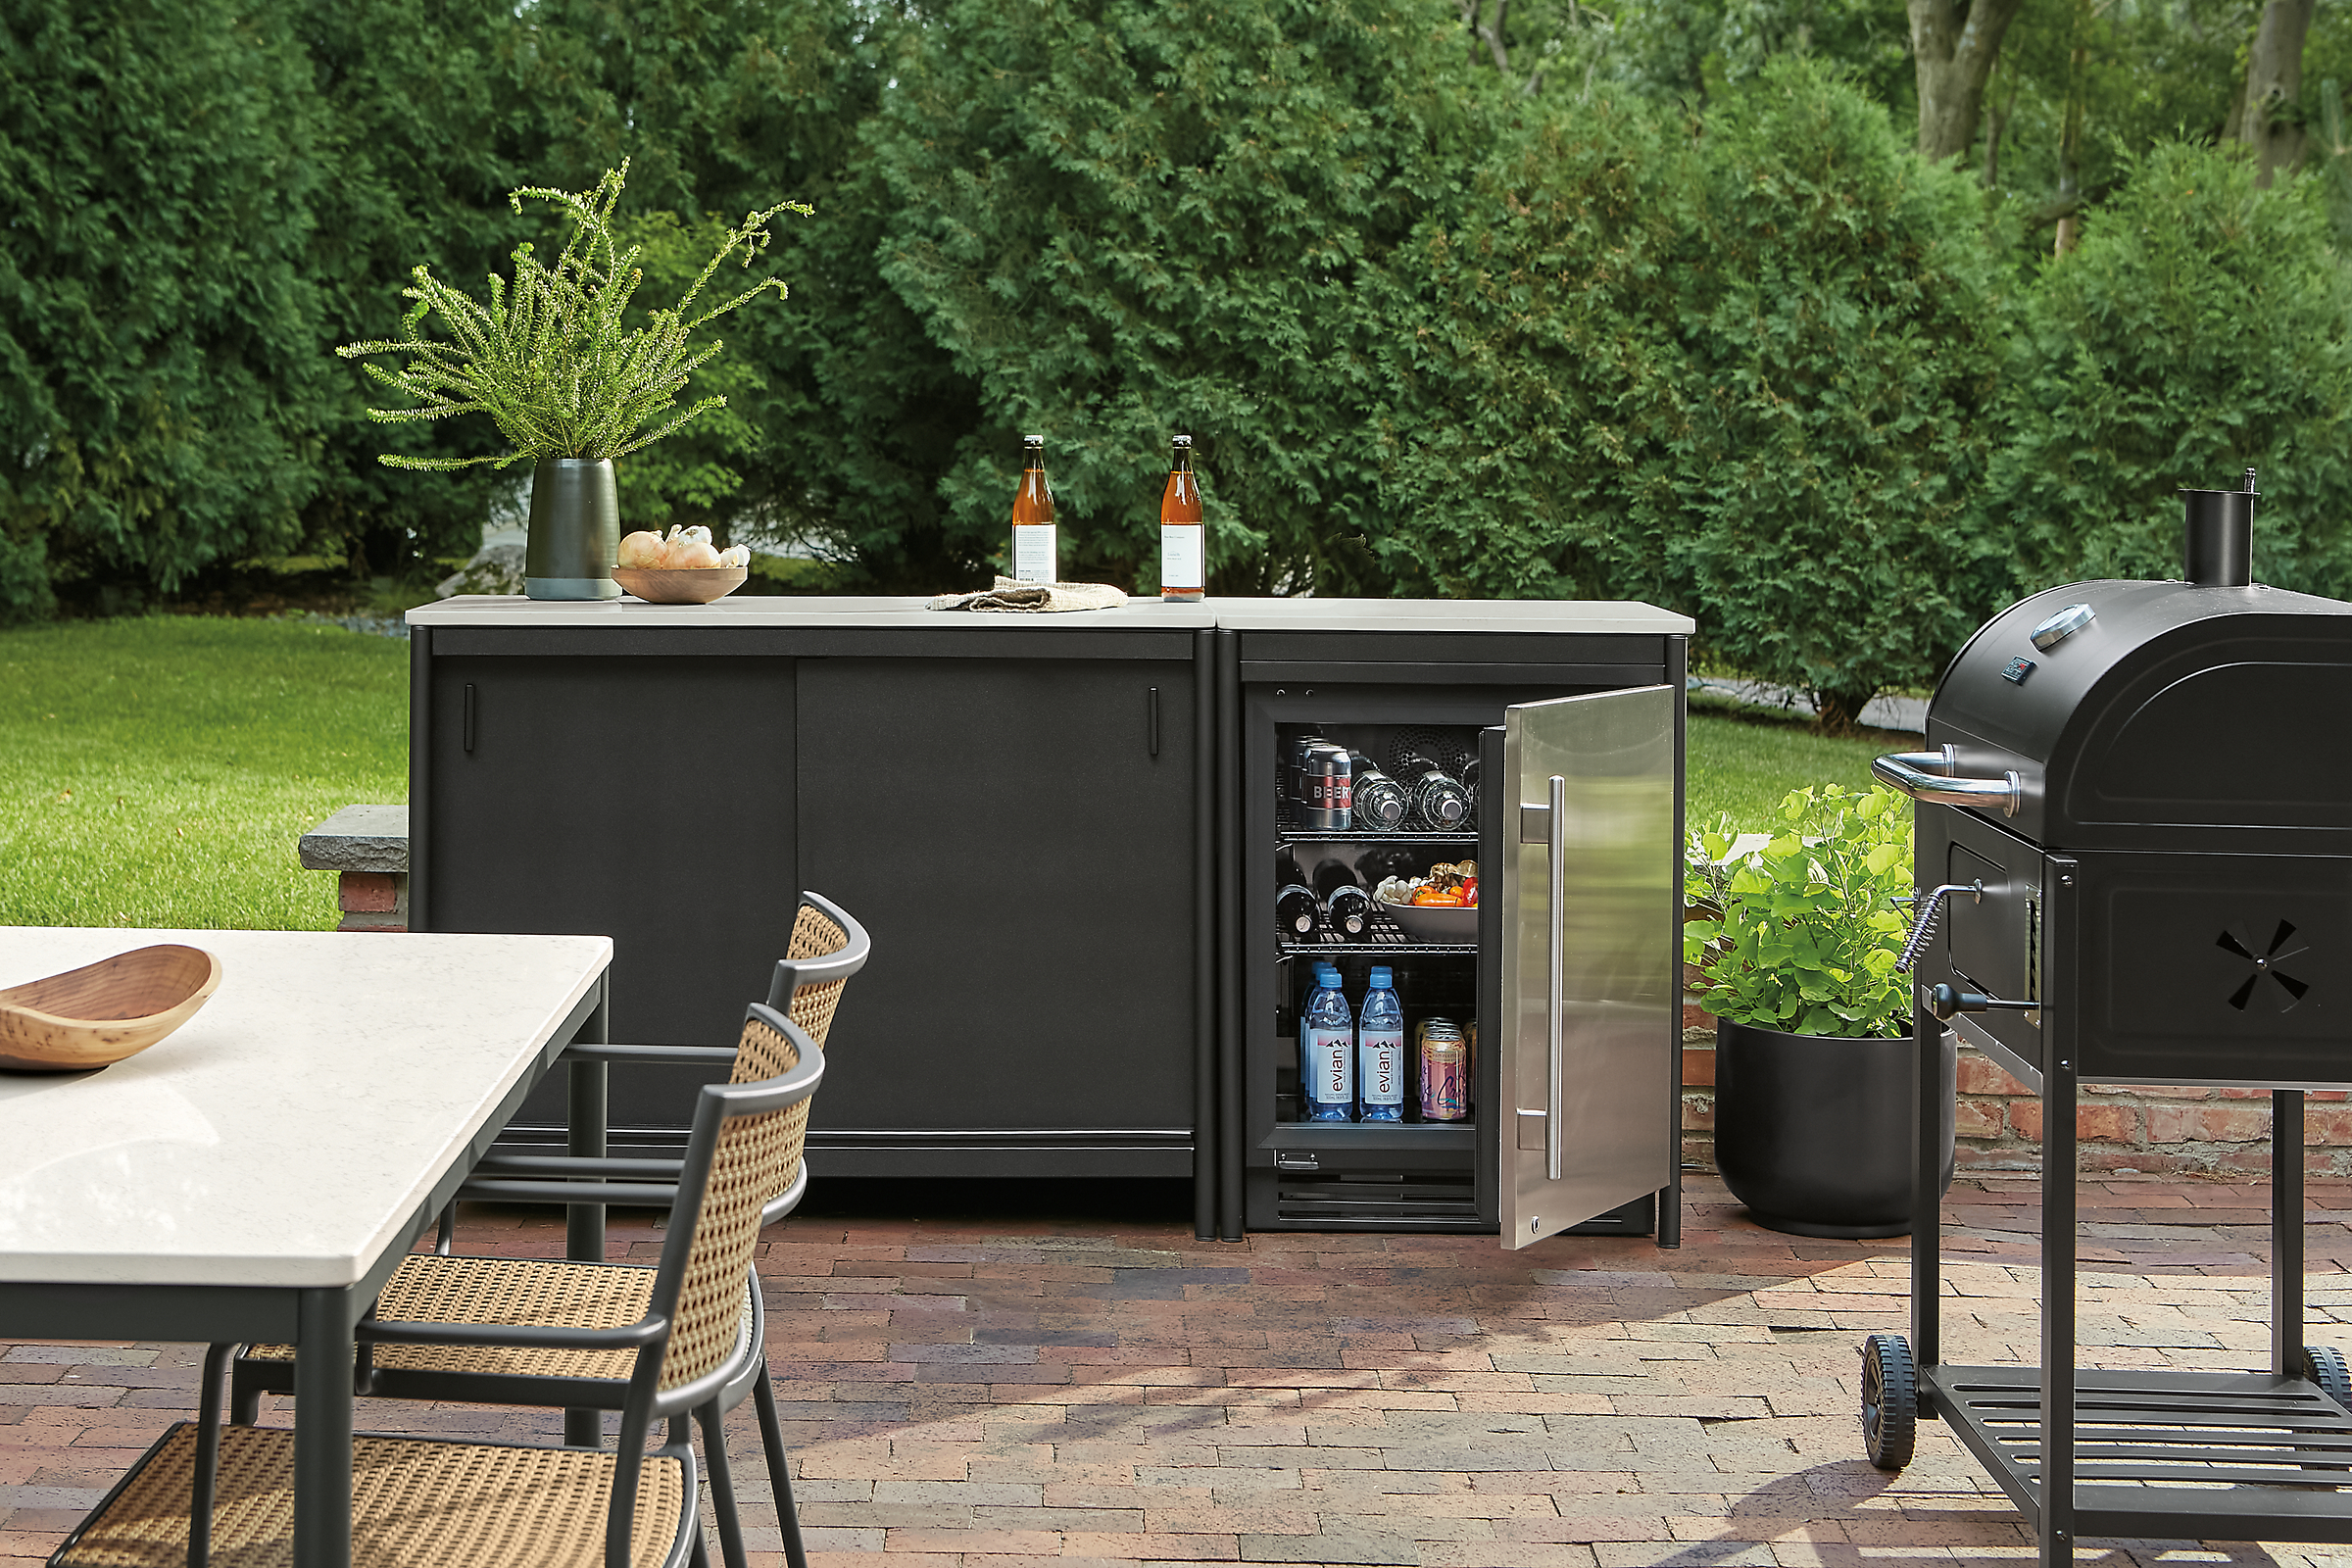 Outdoor space with granger modular outdoor kitchen set with fridge with door open.